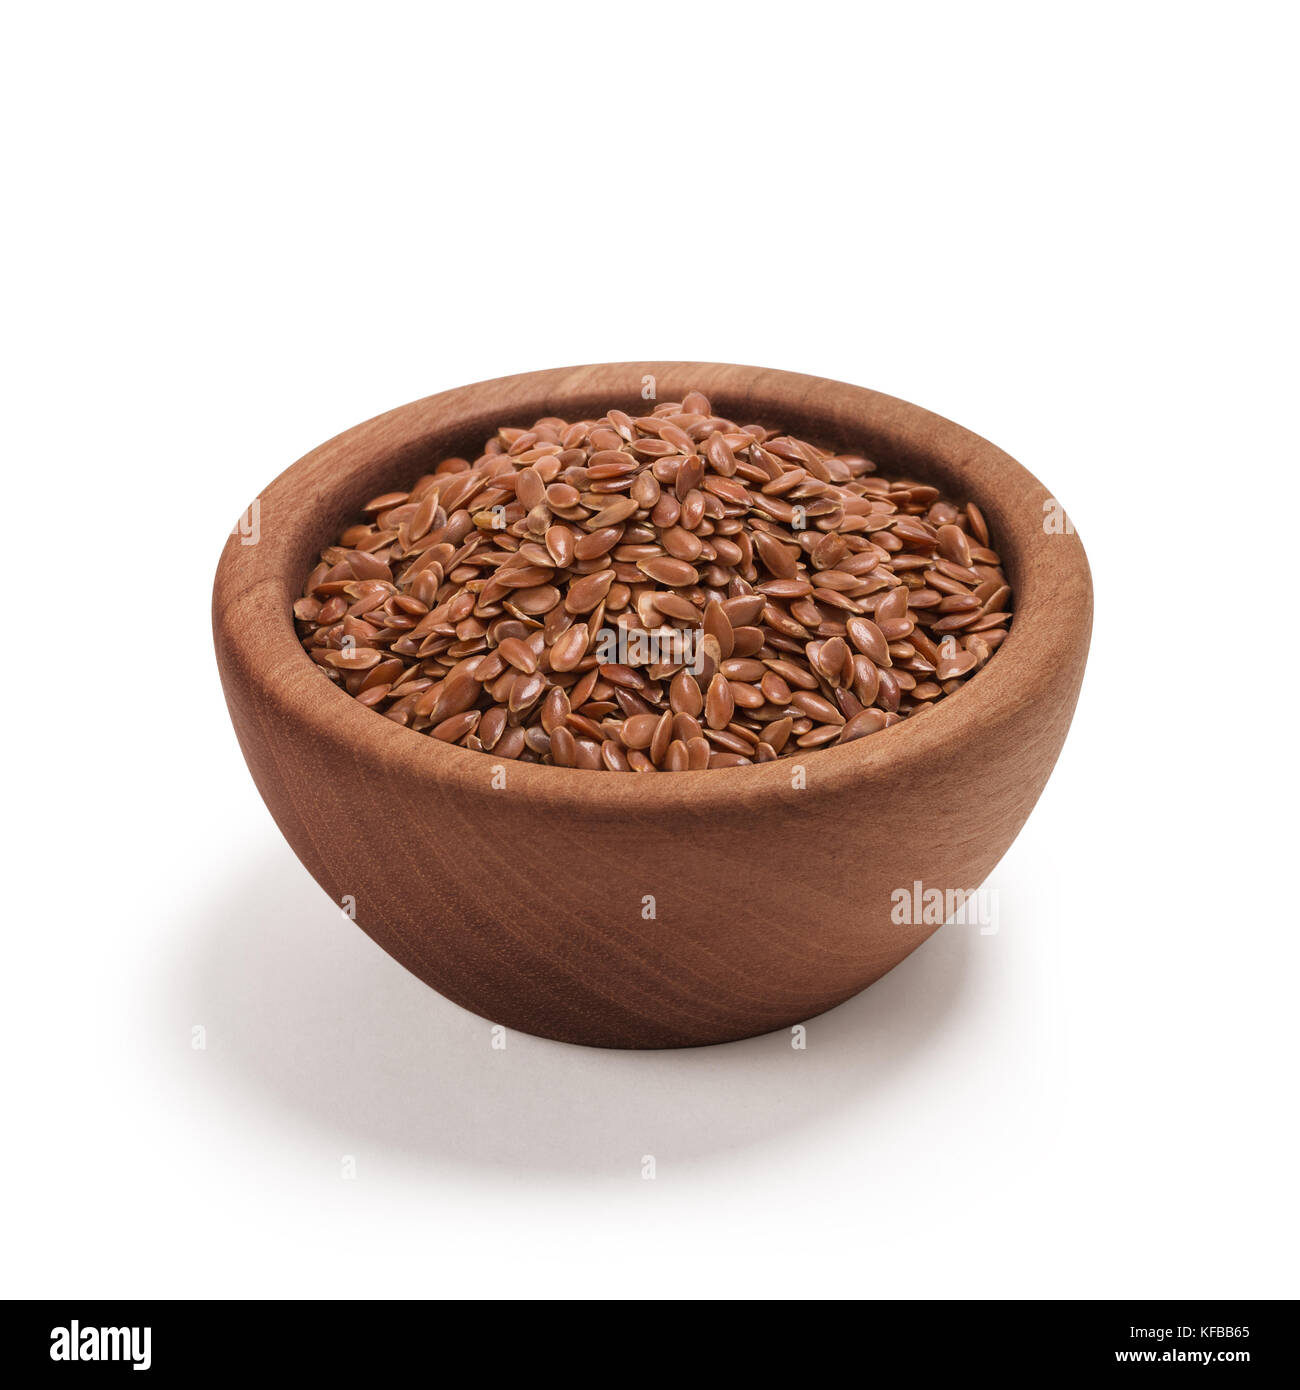 Semi di lino, semi di lino, semi di lin close-up brown di semi di lino o semi di lino in una ciotola di legno, isolato su bianco. Foto Stock